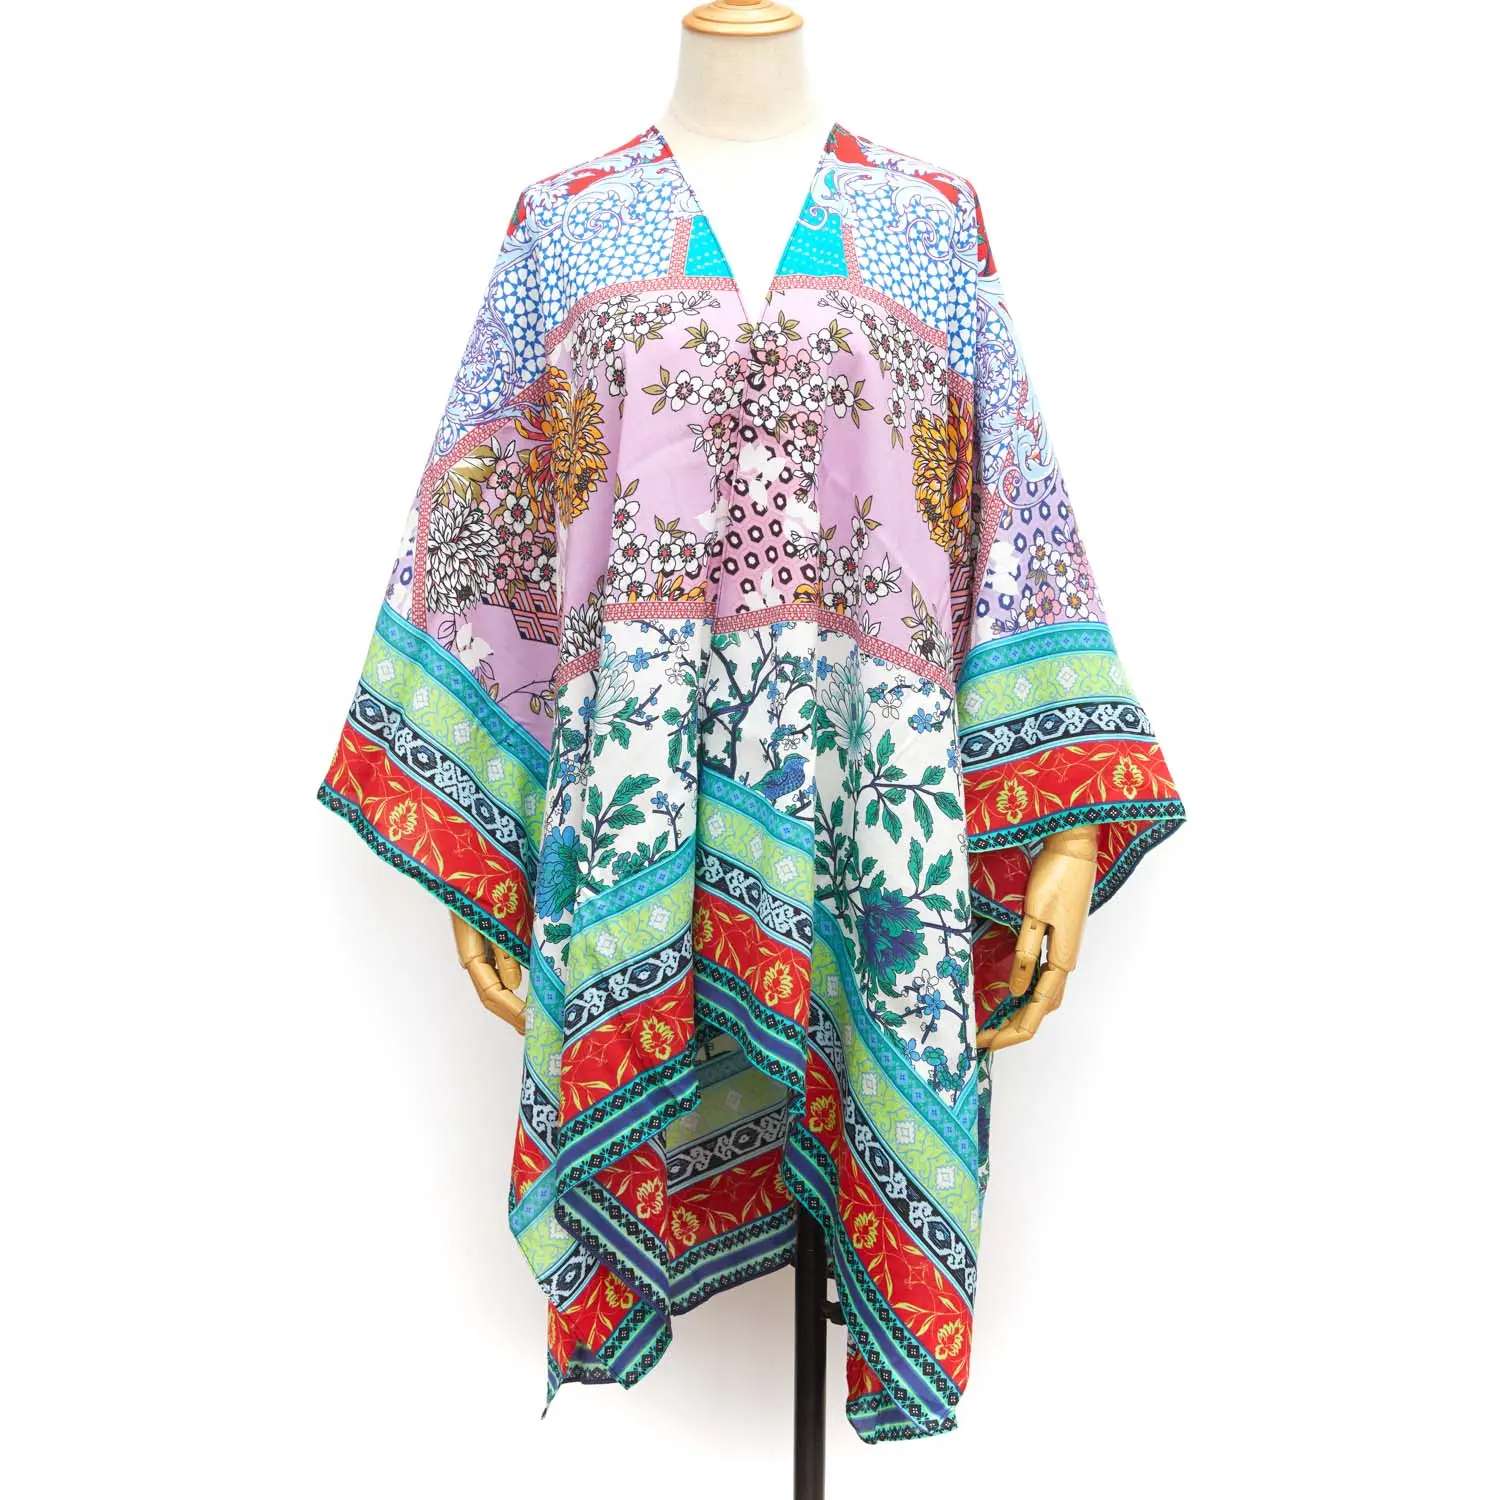 سترة كارديجان من الكيمونو بتصميم خاص بالأزهار